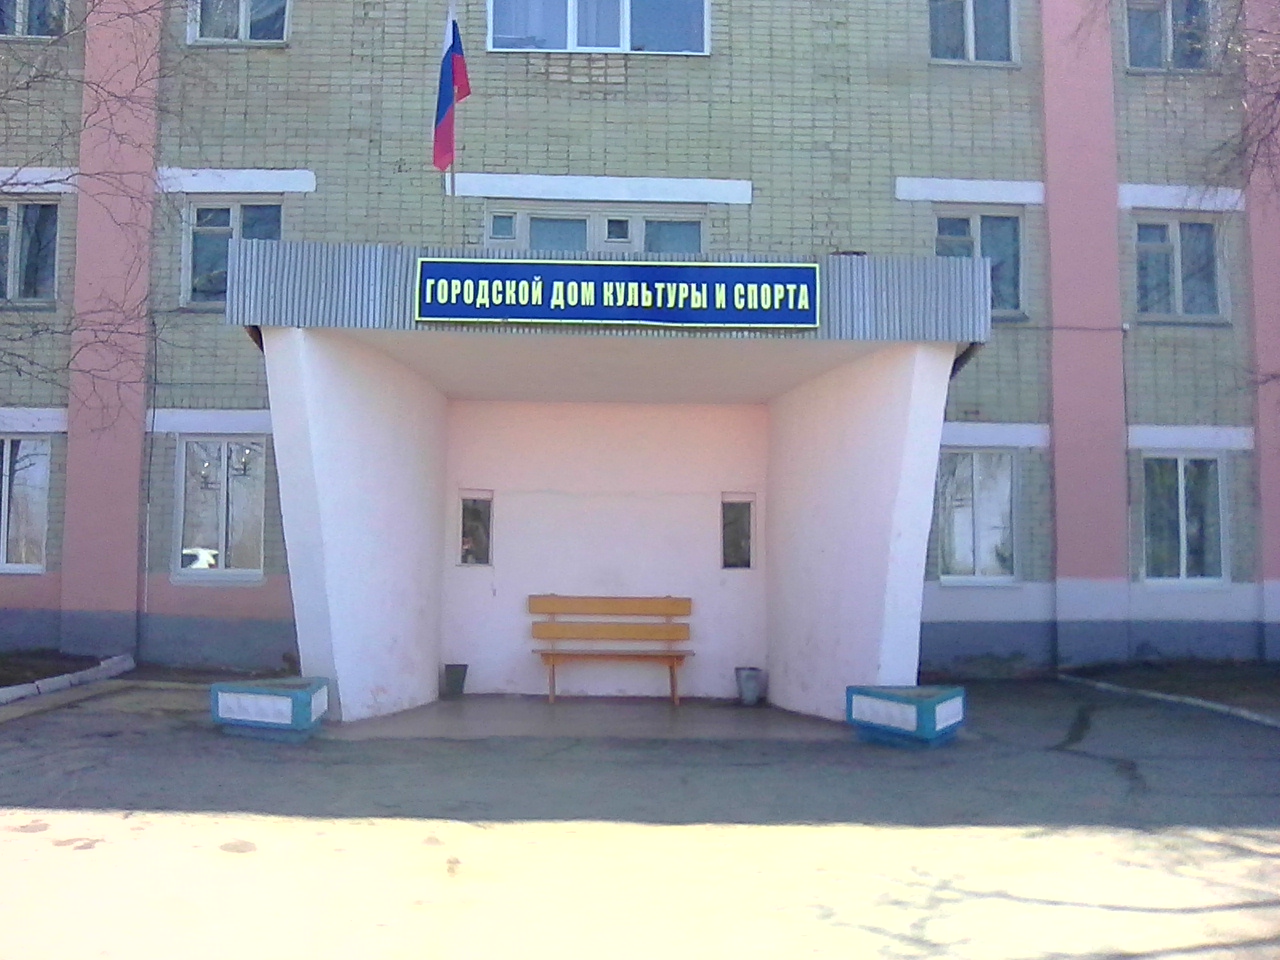 Дом культуры и спорта города Шимановска